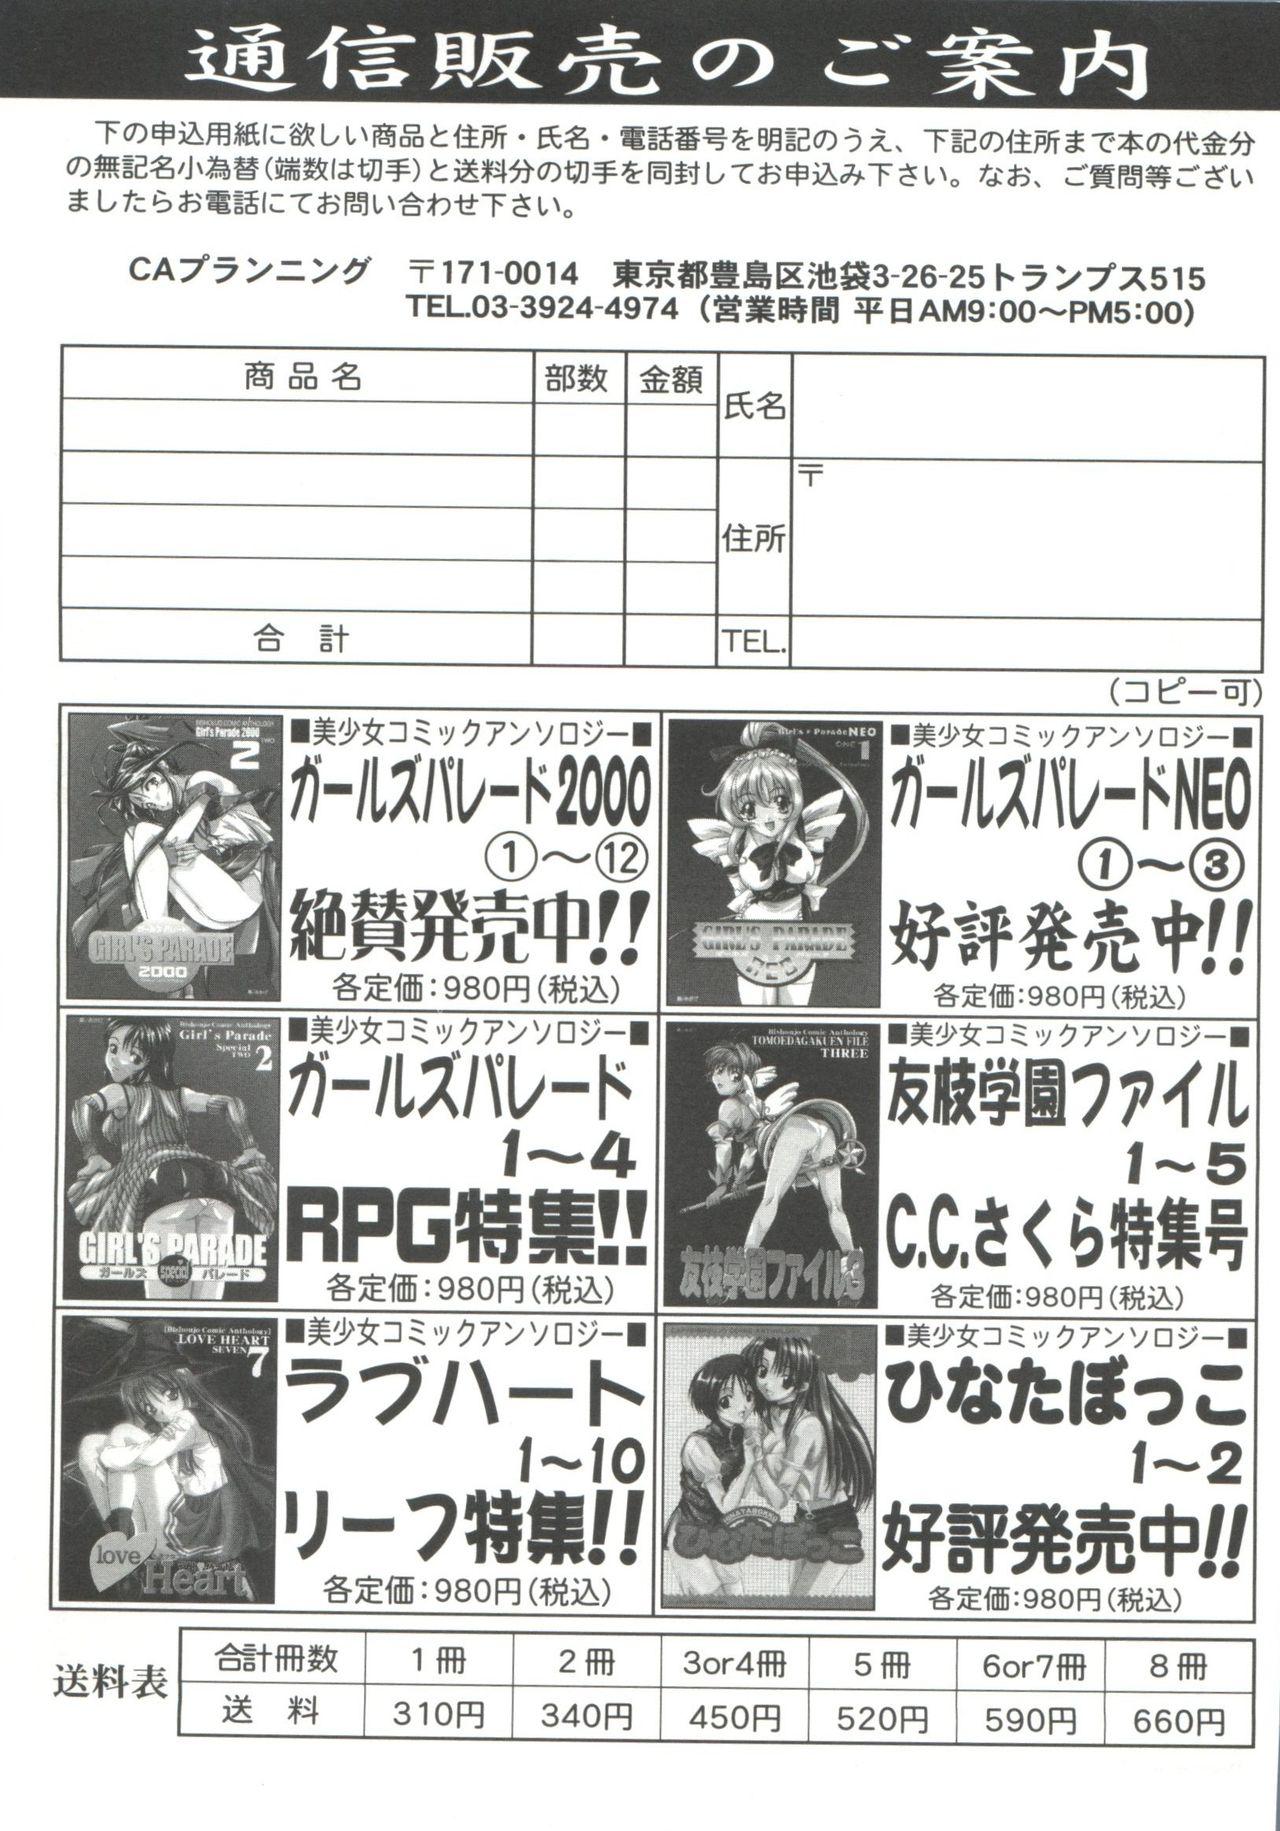 Moaning Tomoeda Gakuen File 5 - Cardcaptor sakura Sucking Dicks - Page 187